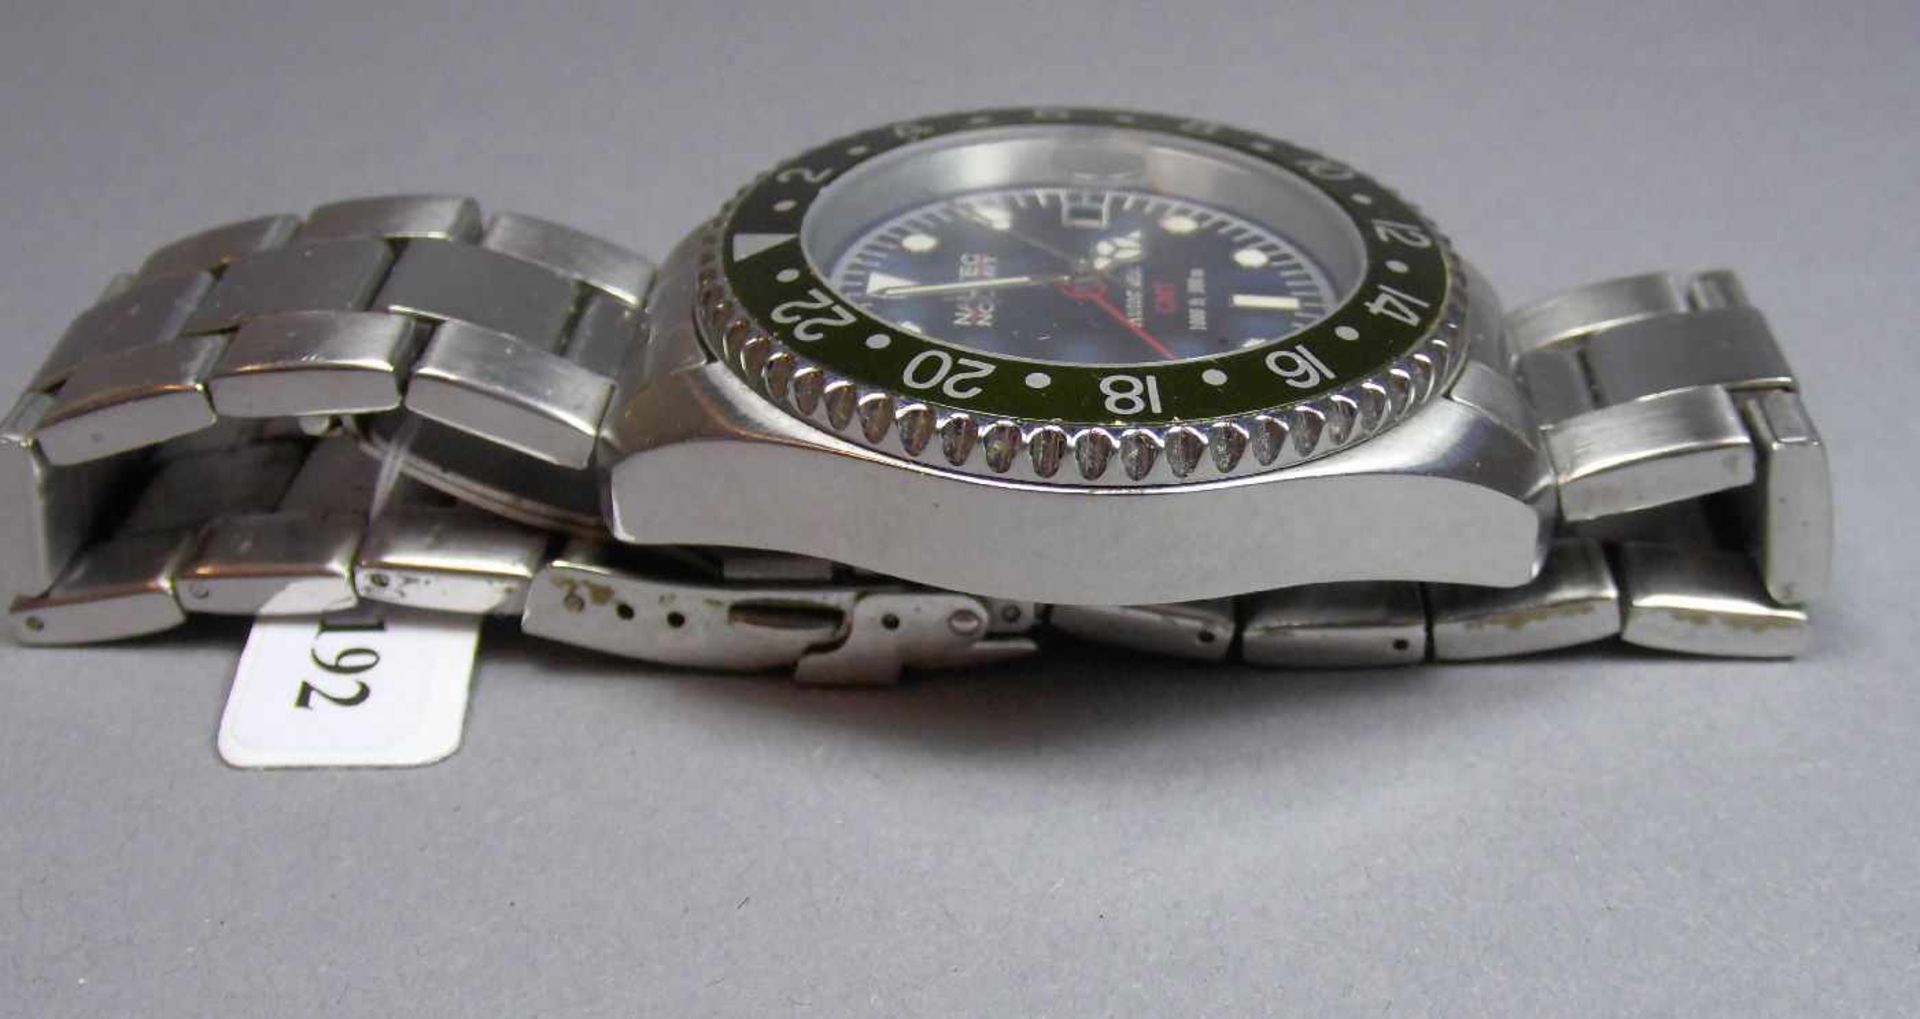 ARMBANDUHR : NAUTEK NO LIMIT GMT / wristwatch, Automatik-Uhr. Rundes Stahlgehäuse mit Gliederarmband - Bild 4 aus 7